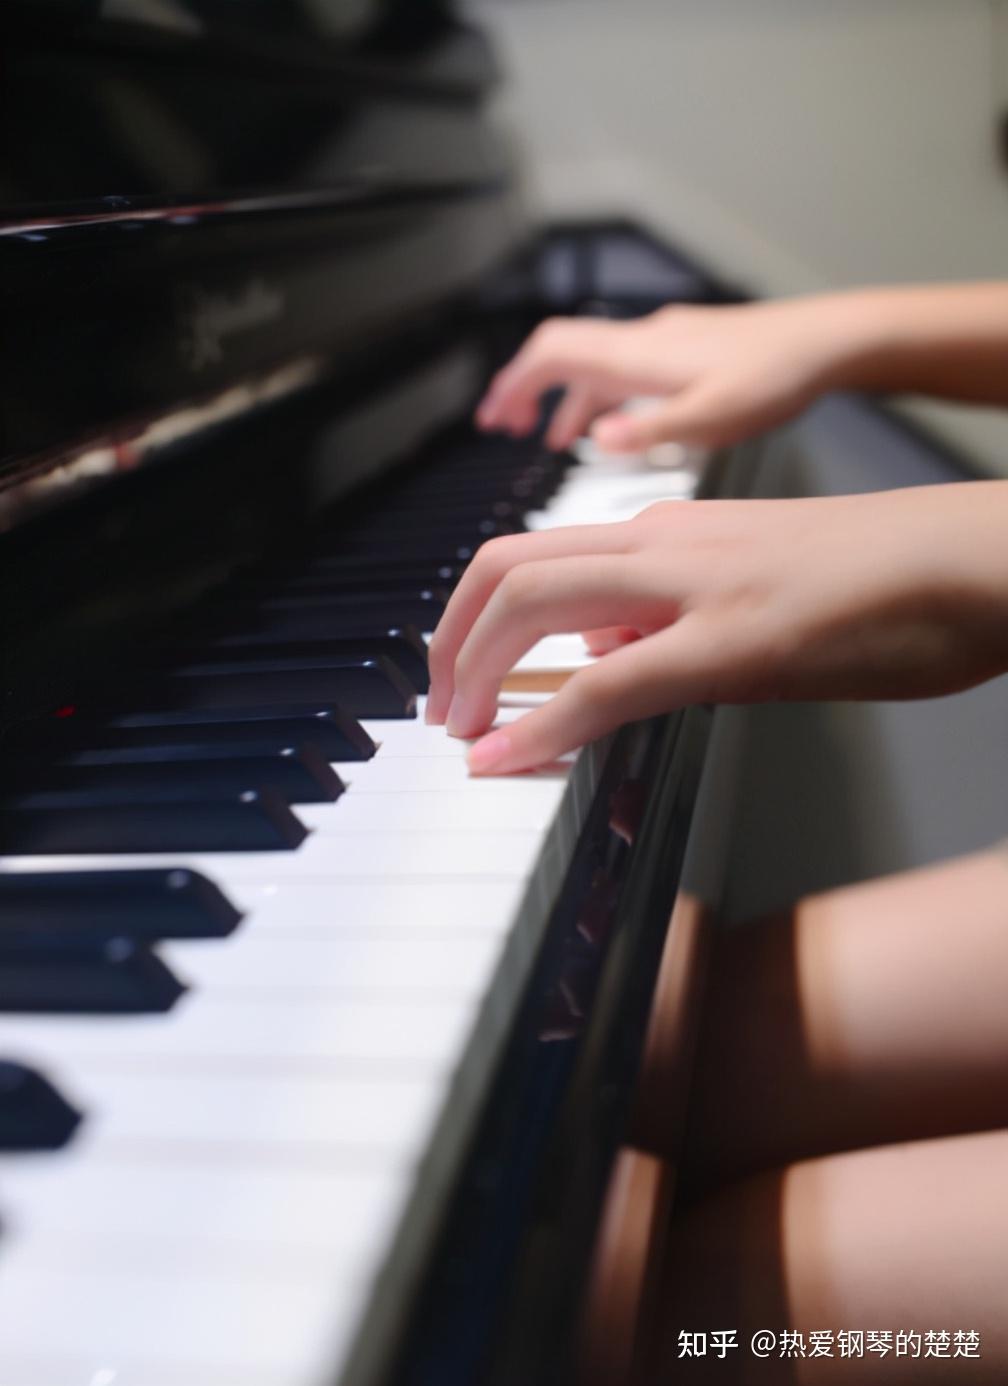 为什么通过观察人的手就能判断他是否会弹钢琴?